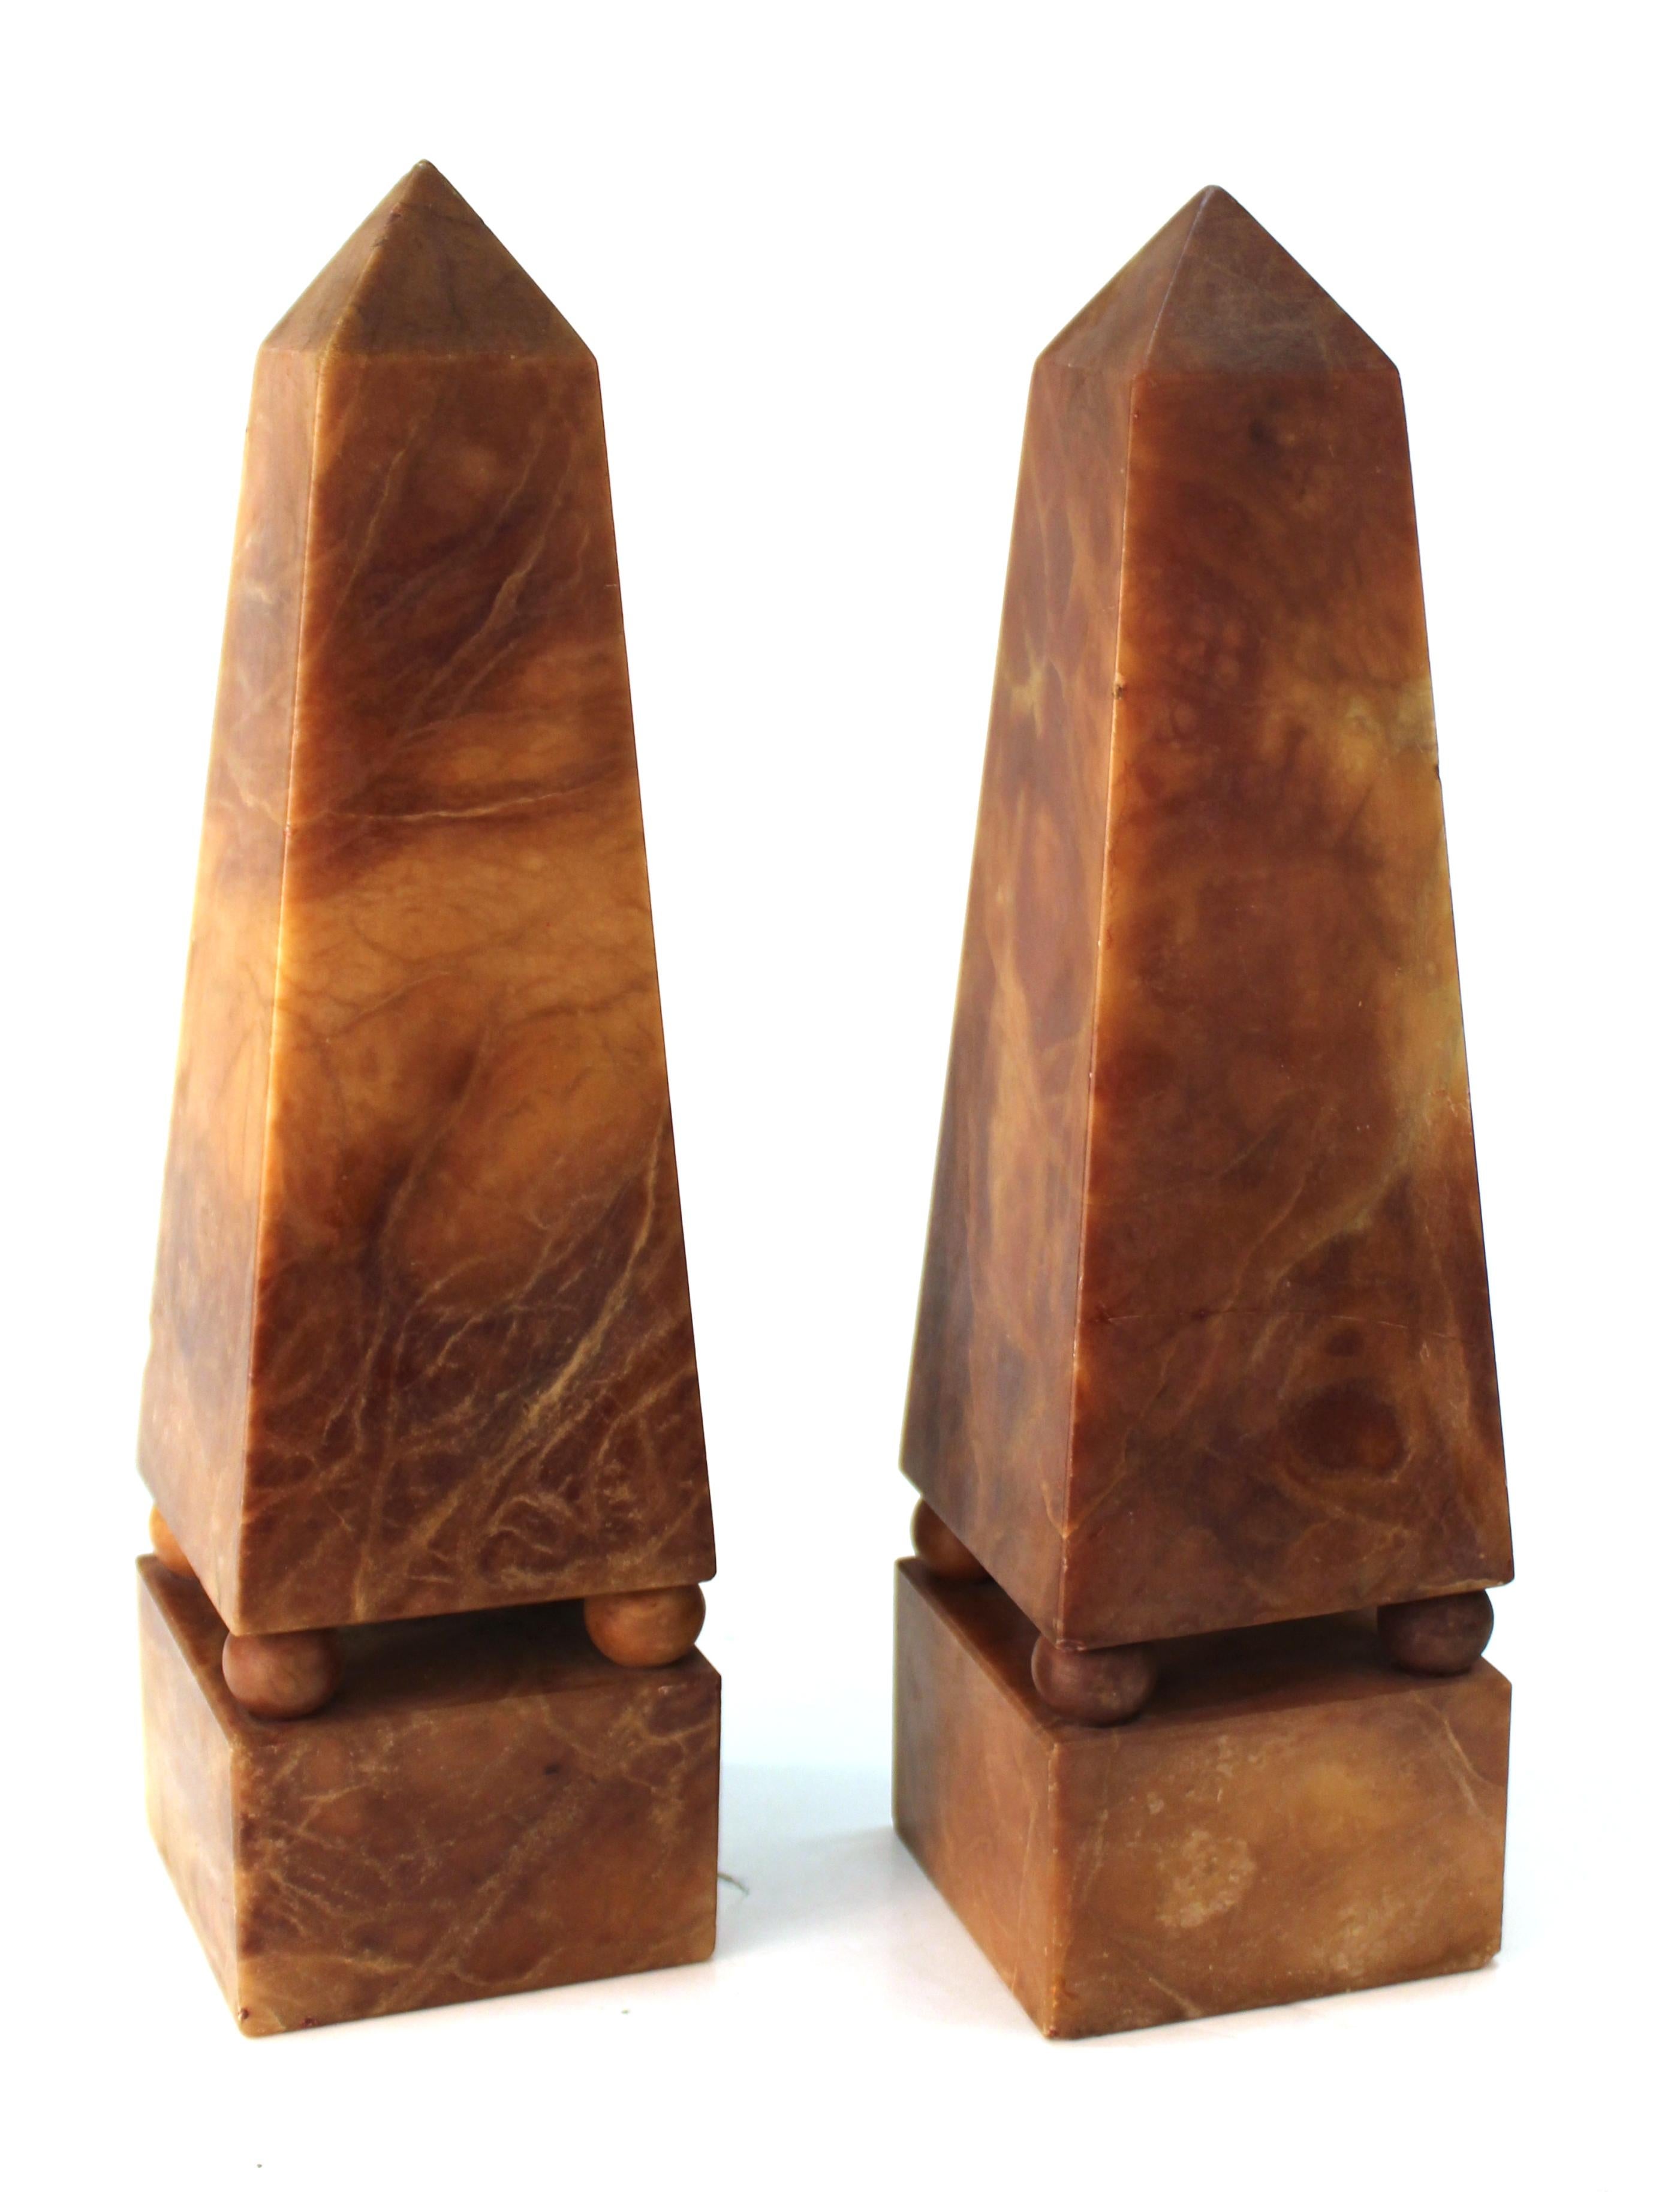 Italienisches Obeliskenpaar im neoklassizistischen Stil des 19. Jahrhunderts aus dem seltenen erloschenen braunen Alabaster. Das Paar wurde in Italien hergestellt und ist in gutem Zustand, mit einigen altersgemäßen Abnutzungserscheinungen und einem